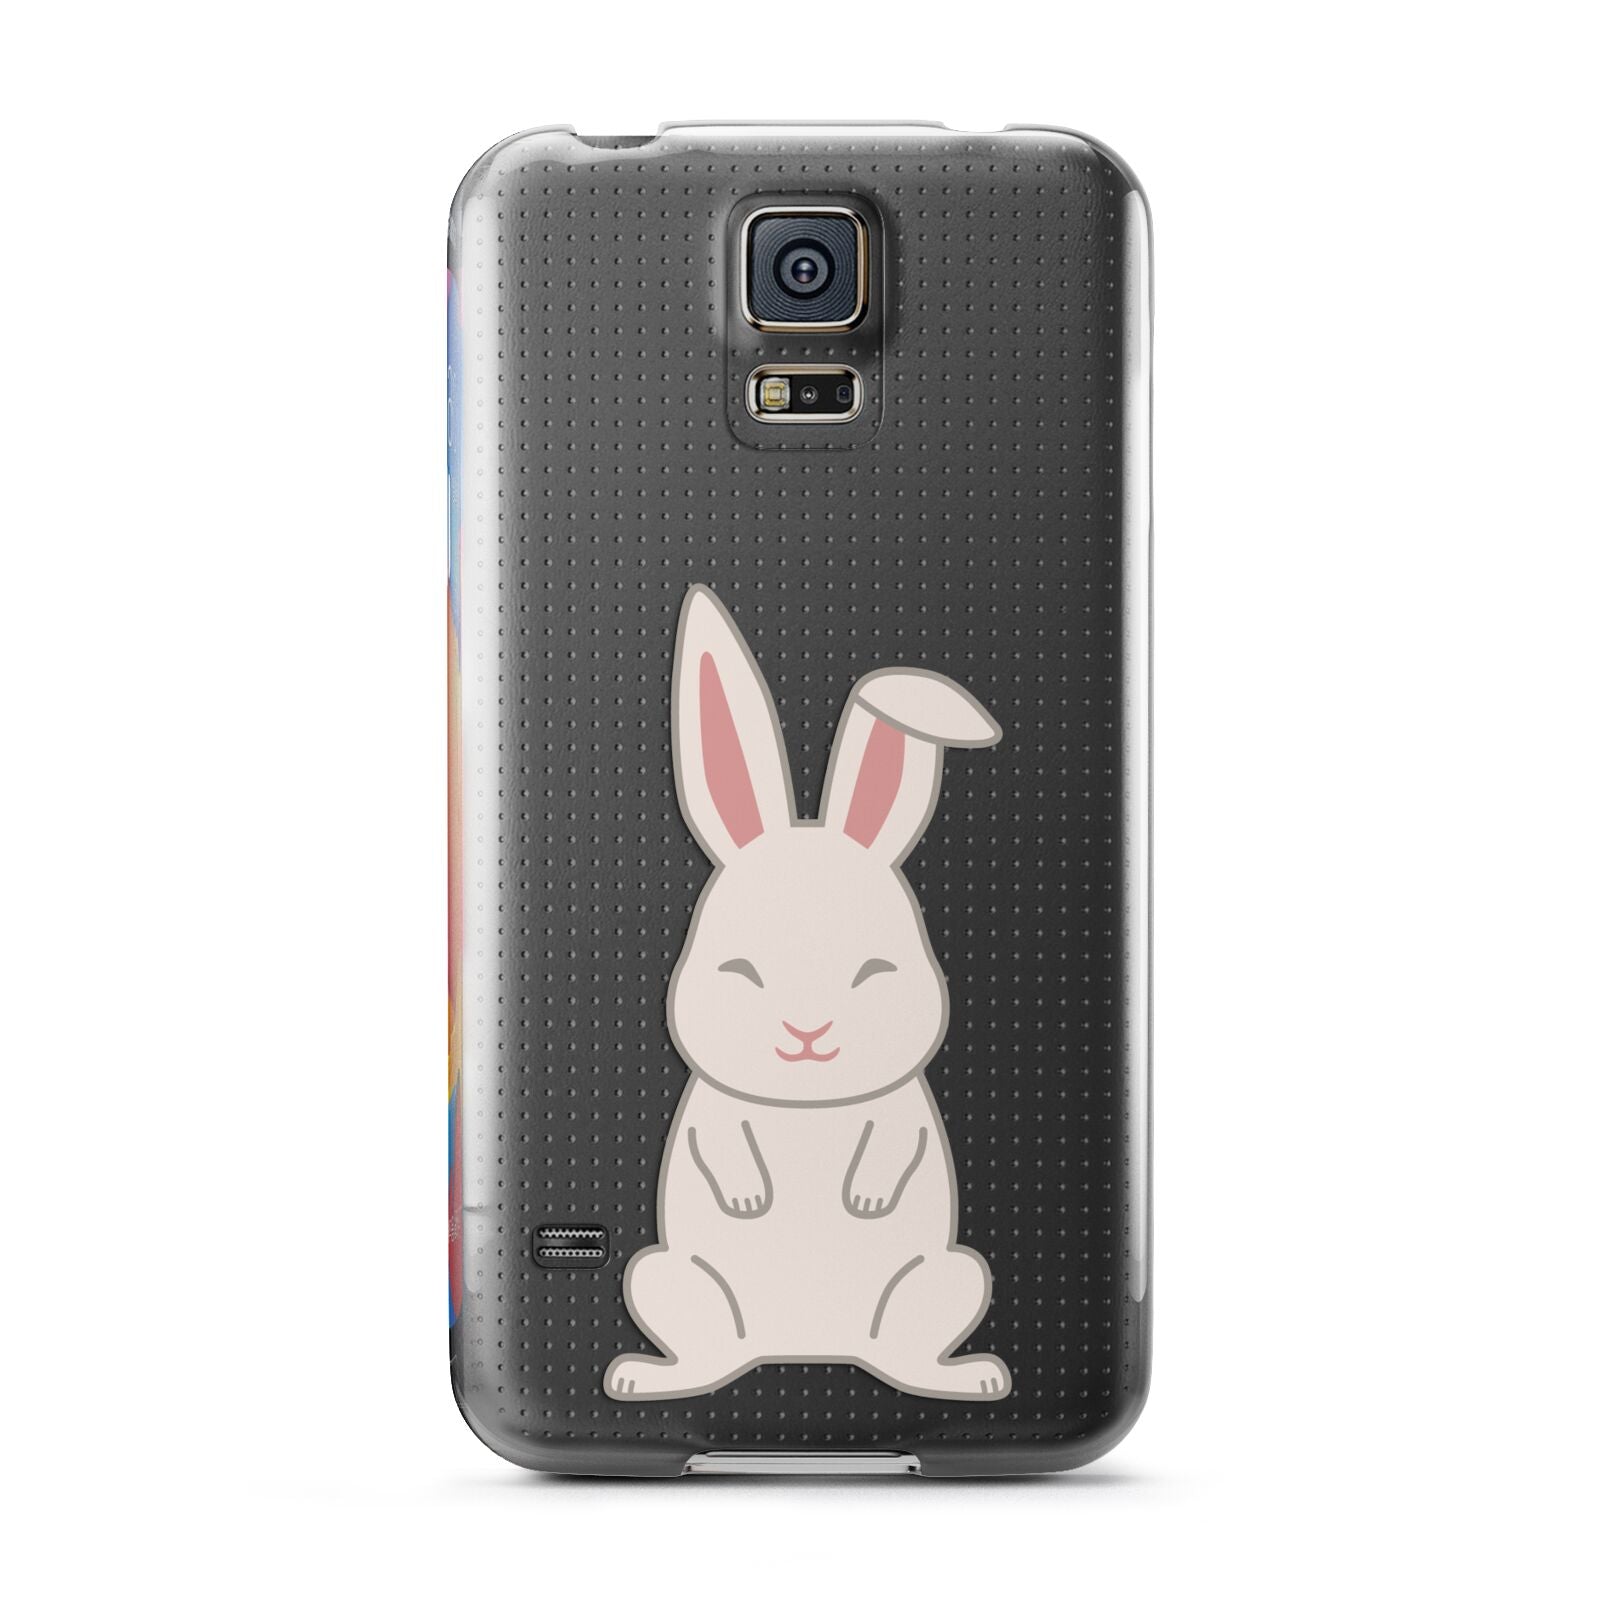 Bunny Samsung Galaxy S5 Case